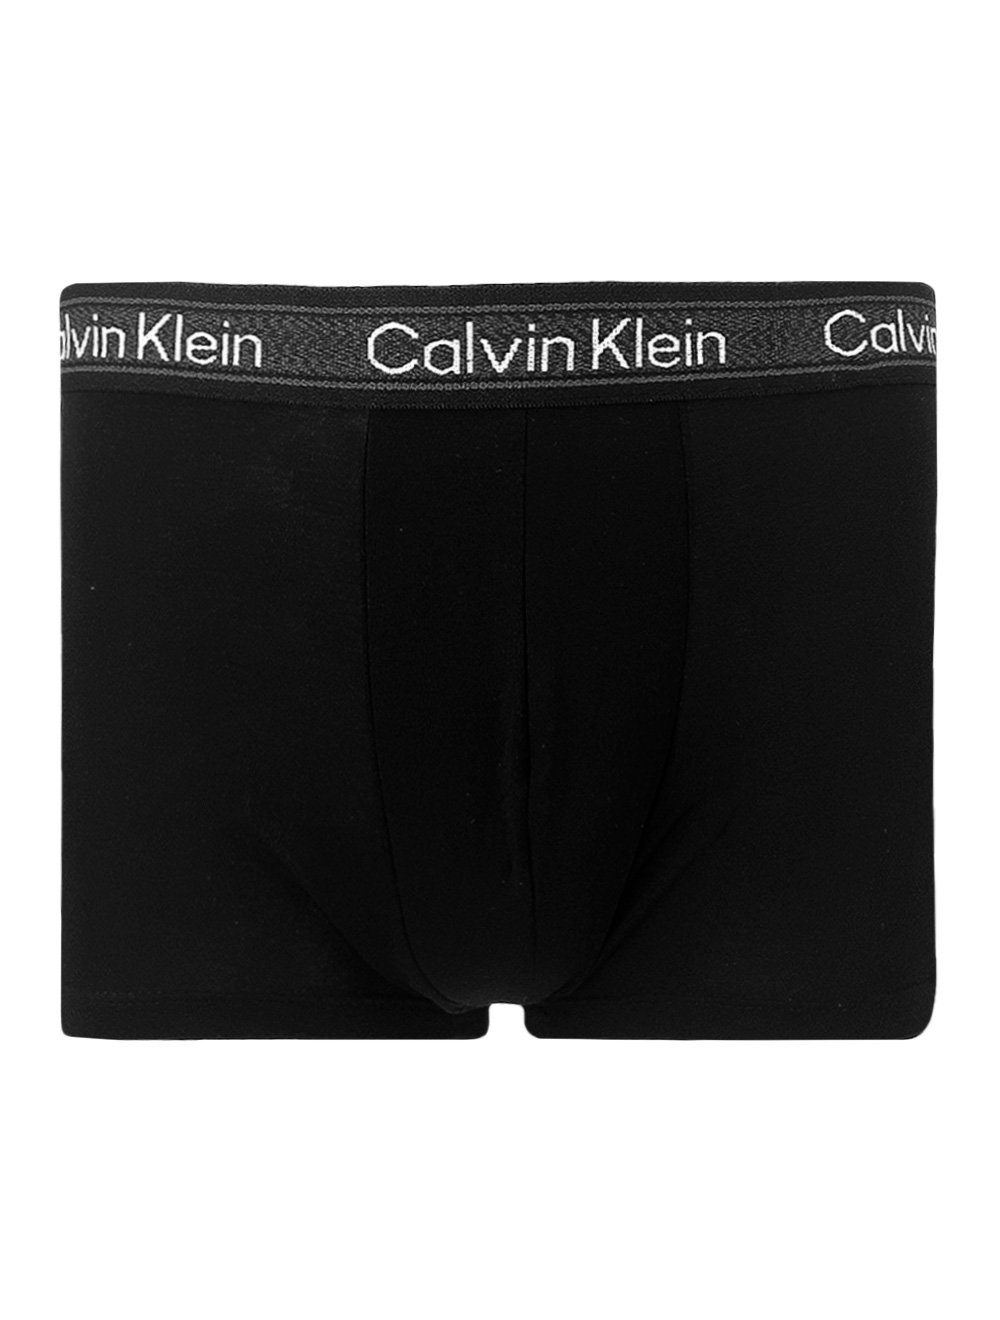 Cueca Calvin Klein Trunk Mesh Print Preta